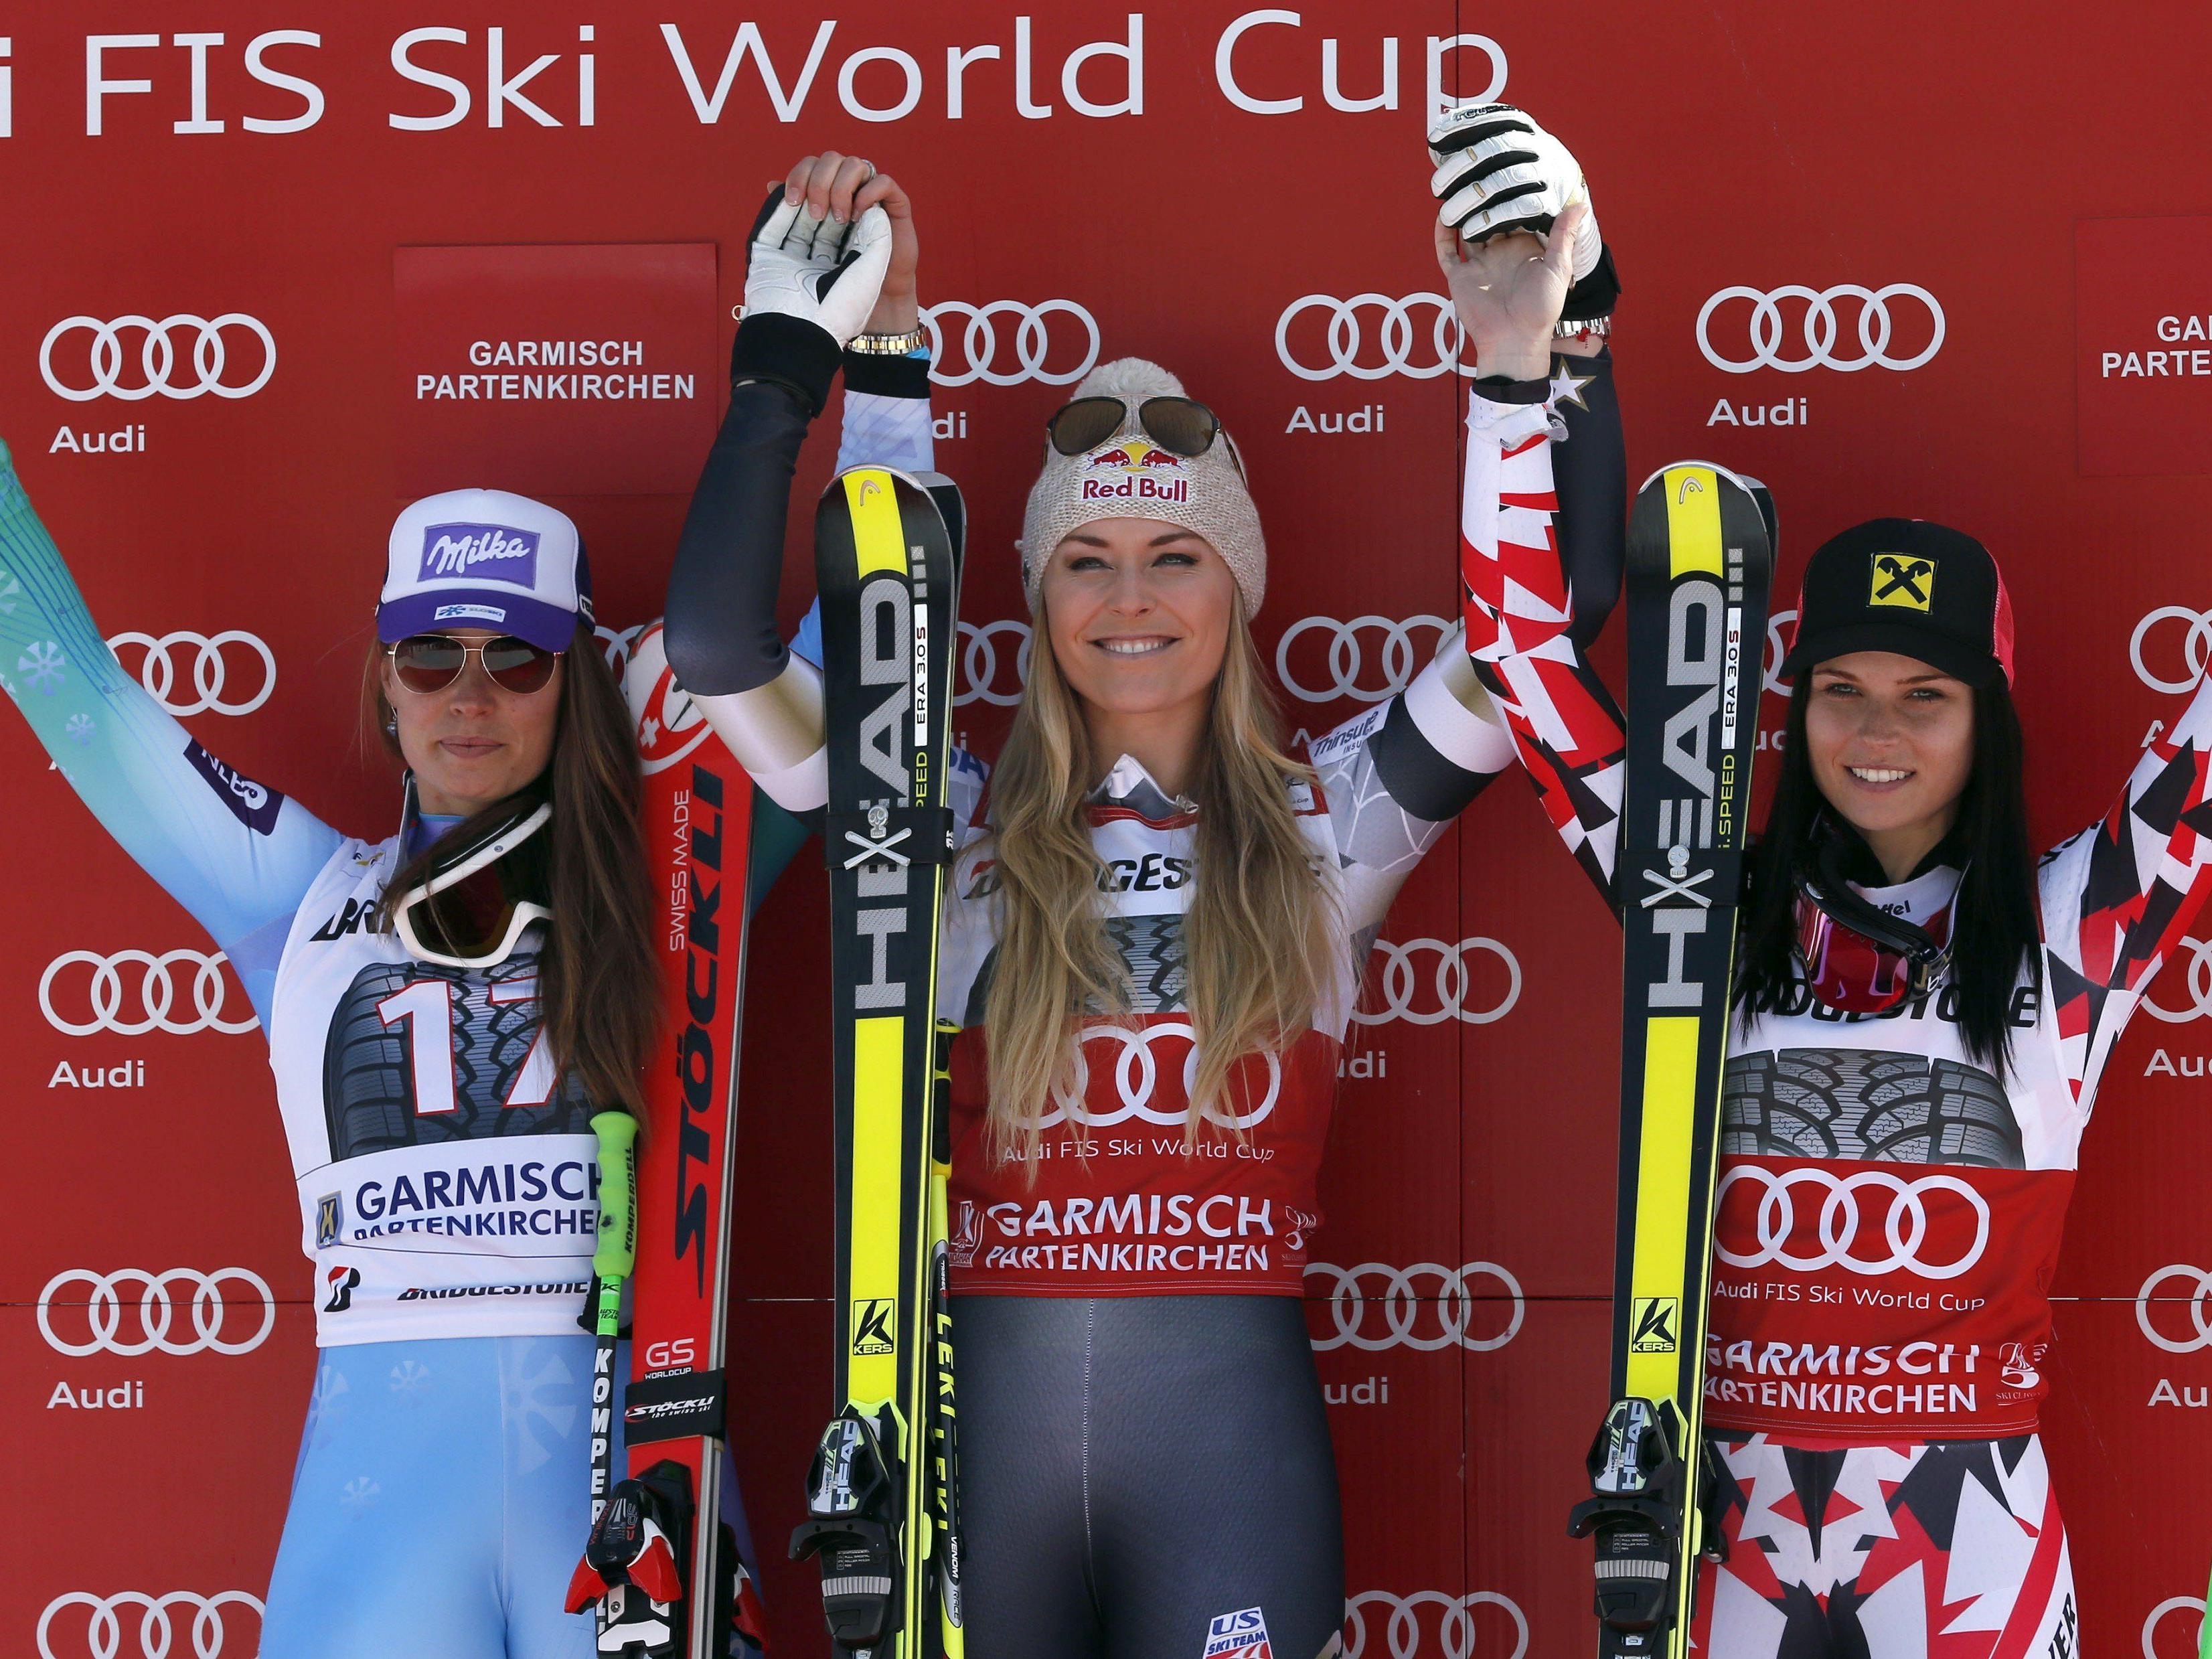 Ein Siegertreppchen, zwei offene Rennen um Kristallkugeln, drei exzellente Skifahrerinnen.